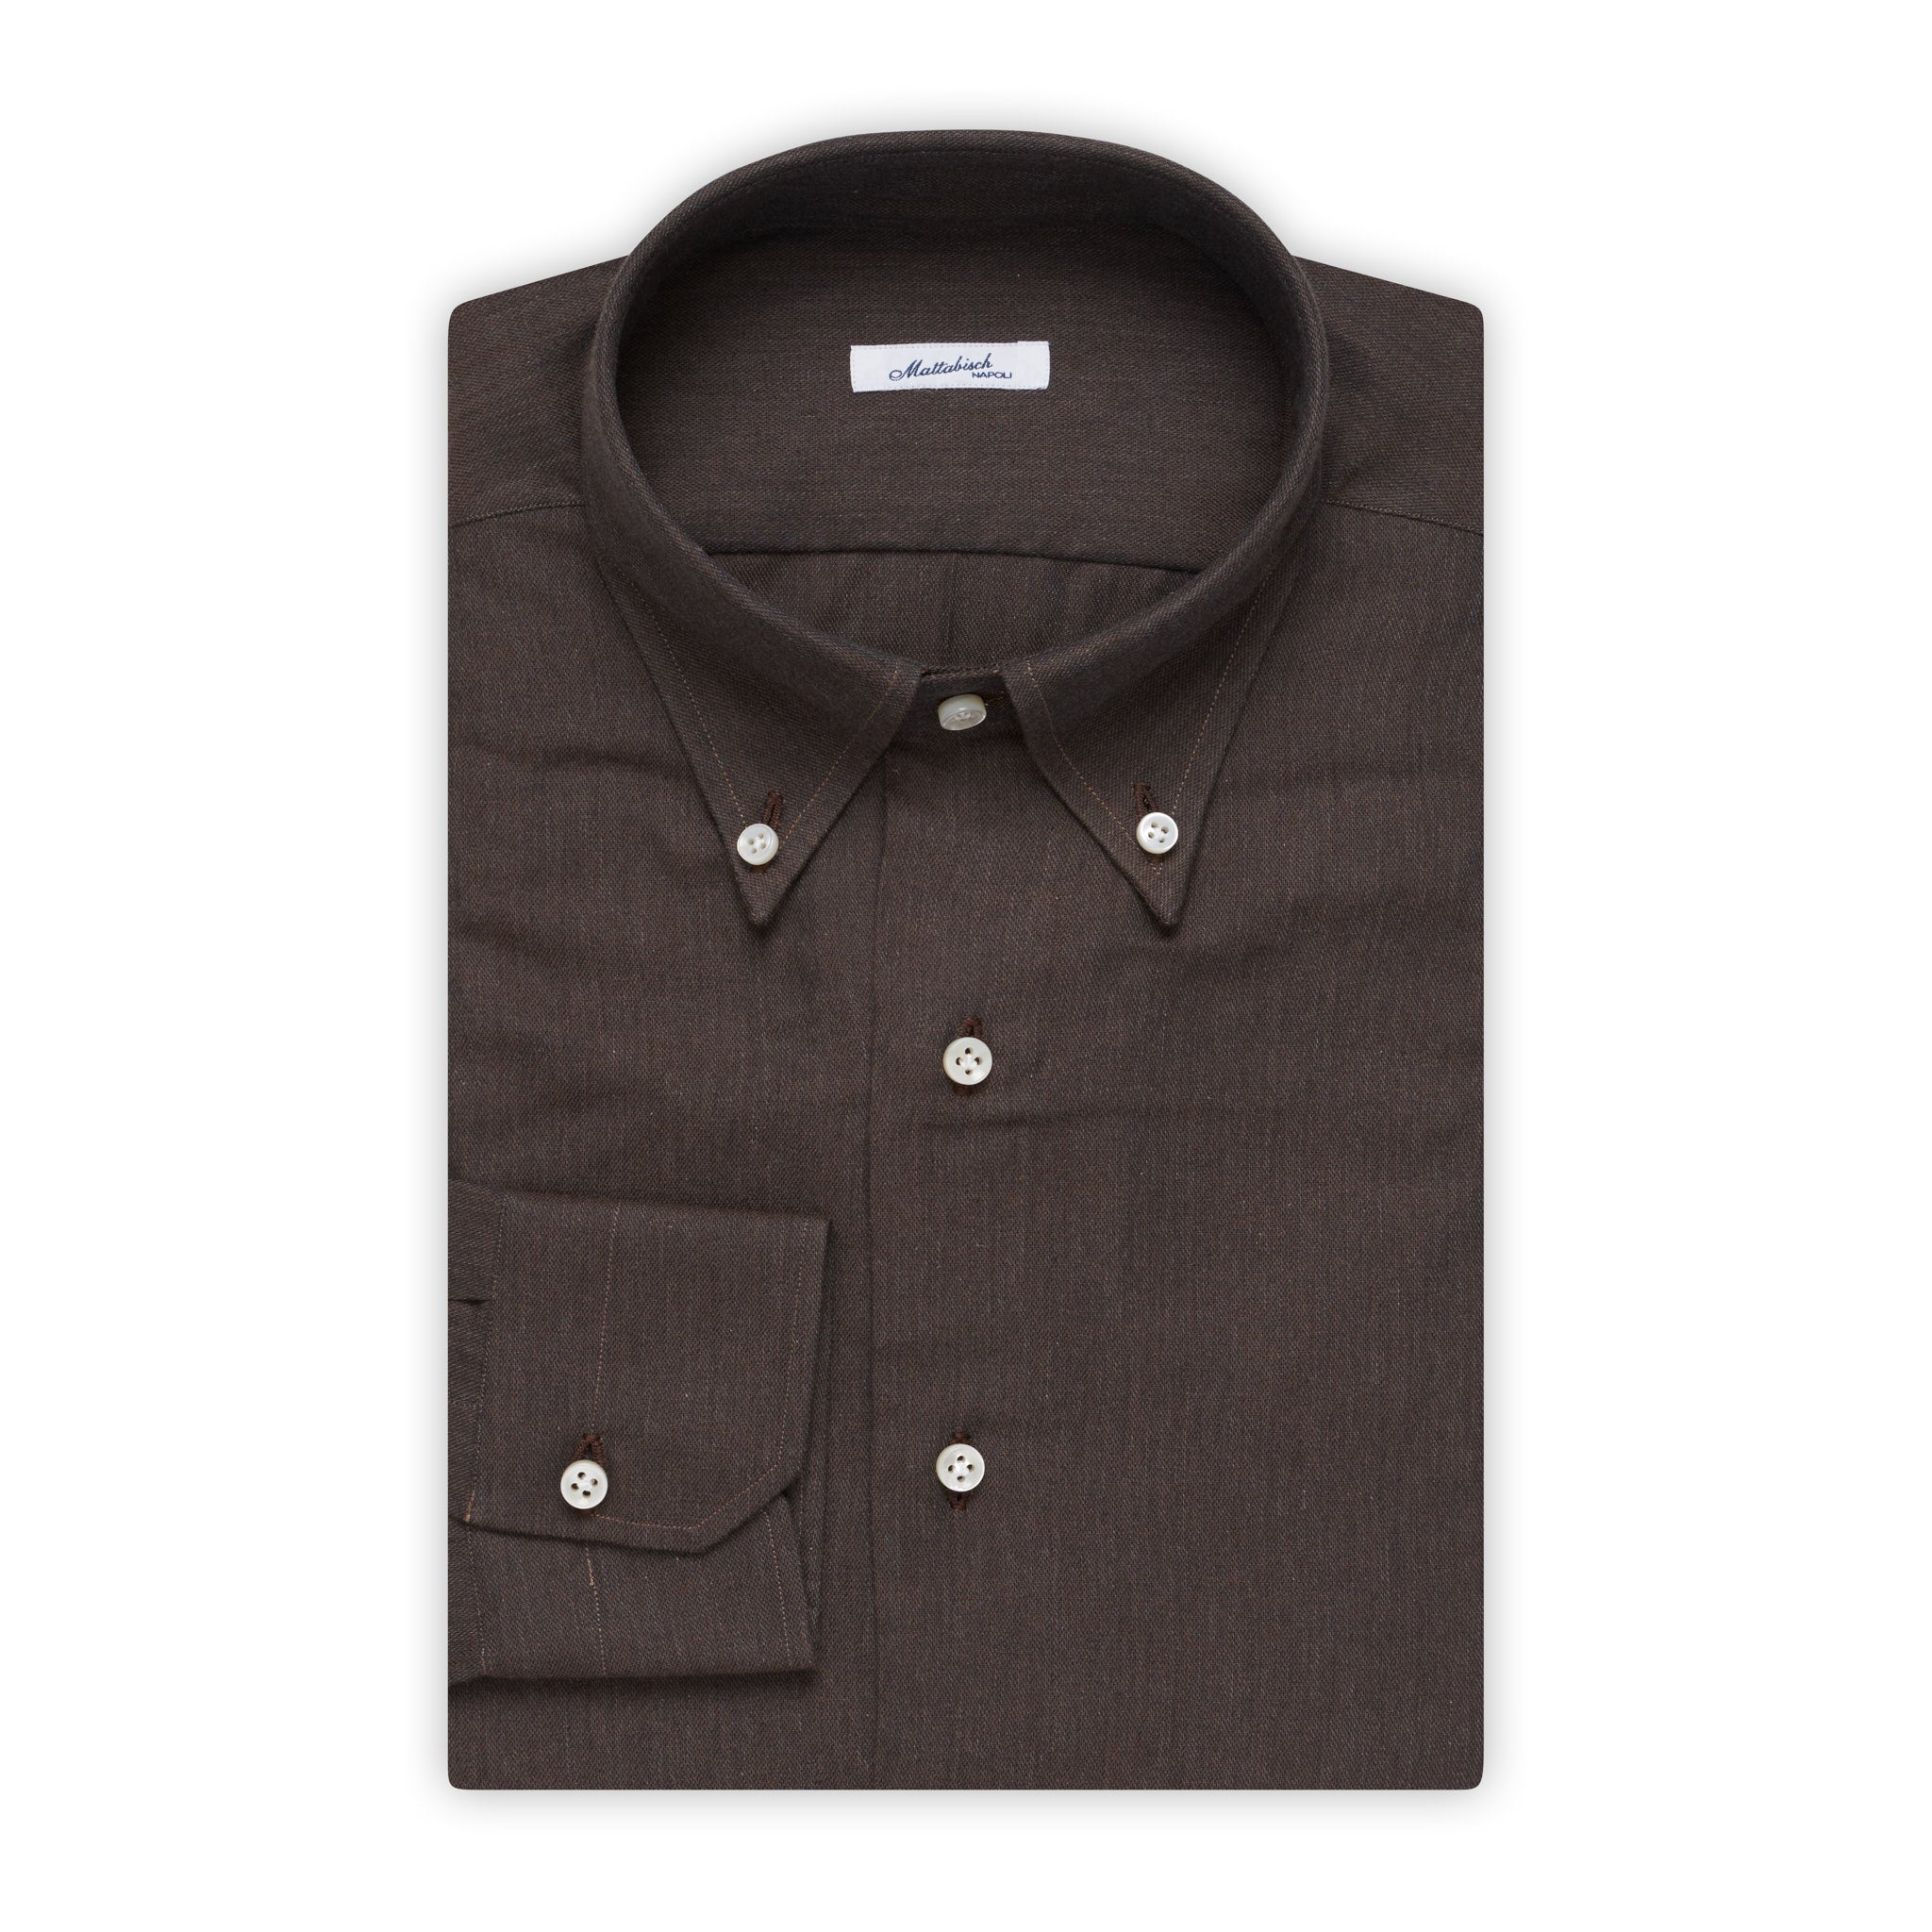 MATTABISCH by Kiton Handmade Solid Gray Button-Down Shirt 40 NEW 15.75 Slim